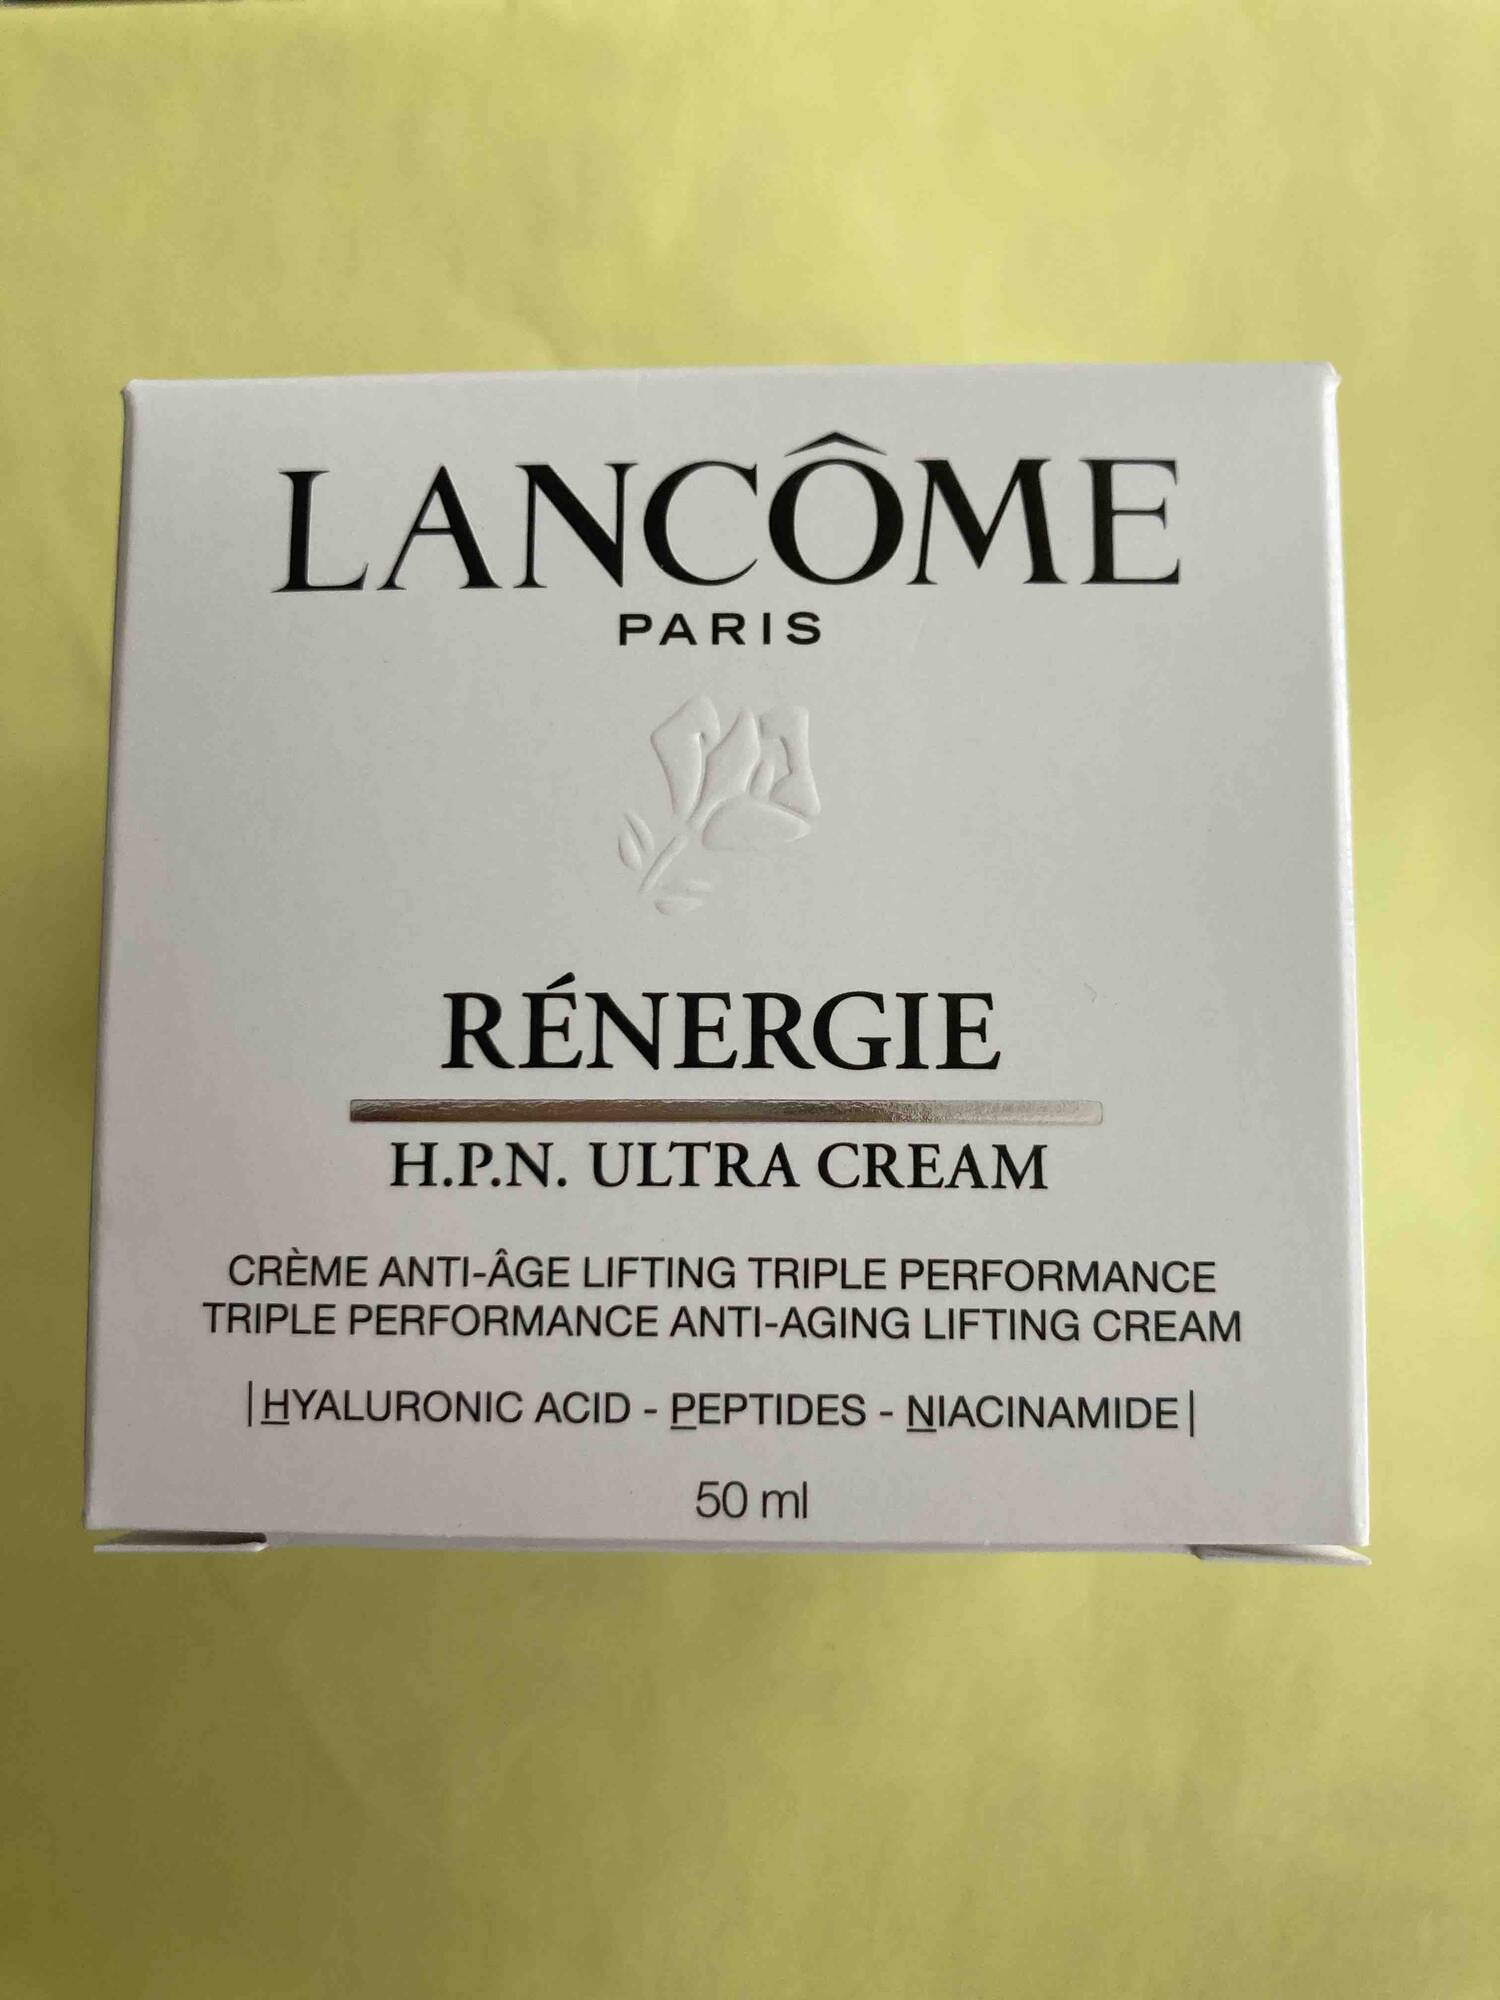 LANCÔME PARIS - Rénergie - HPN ultra cream